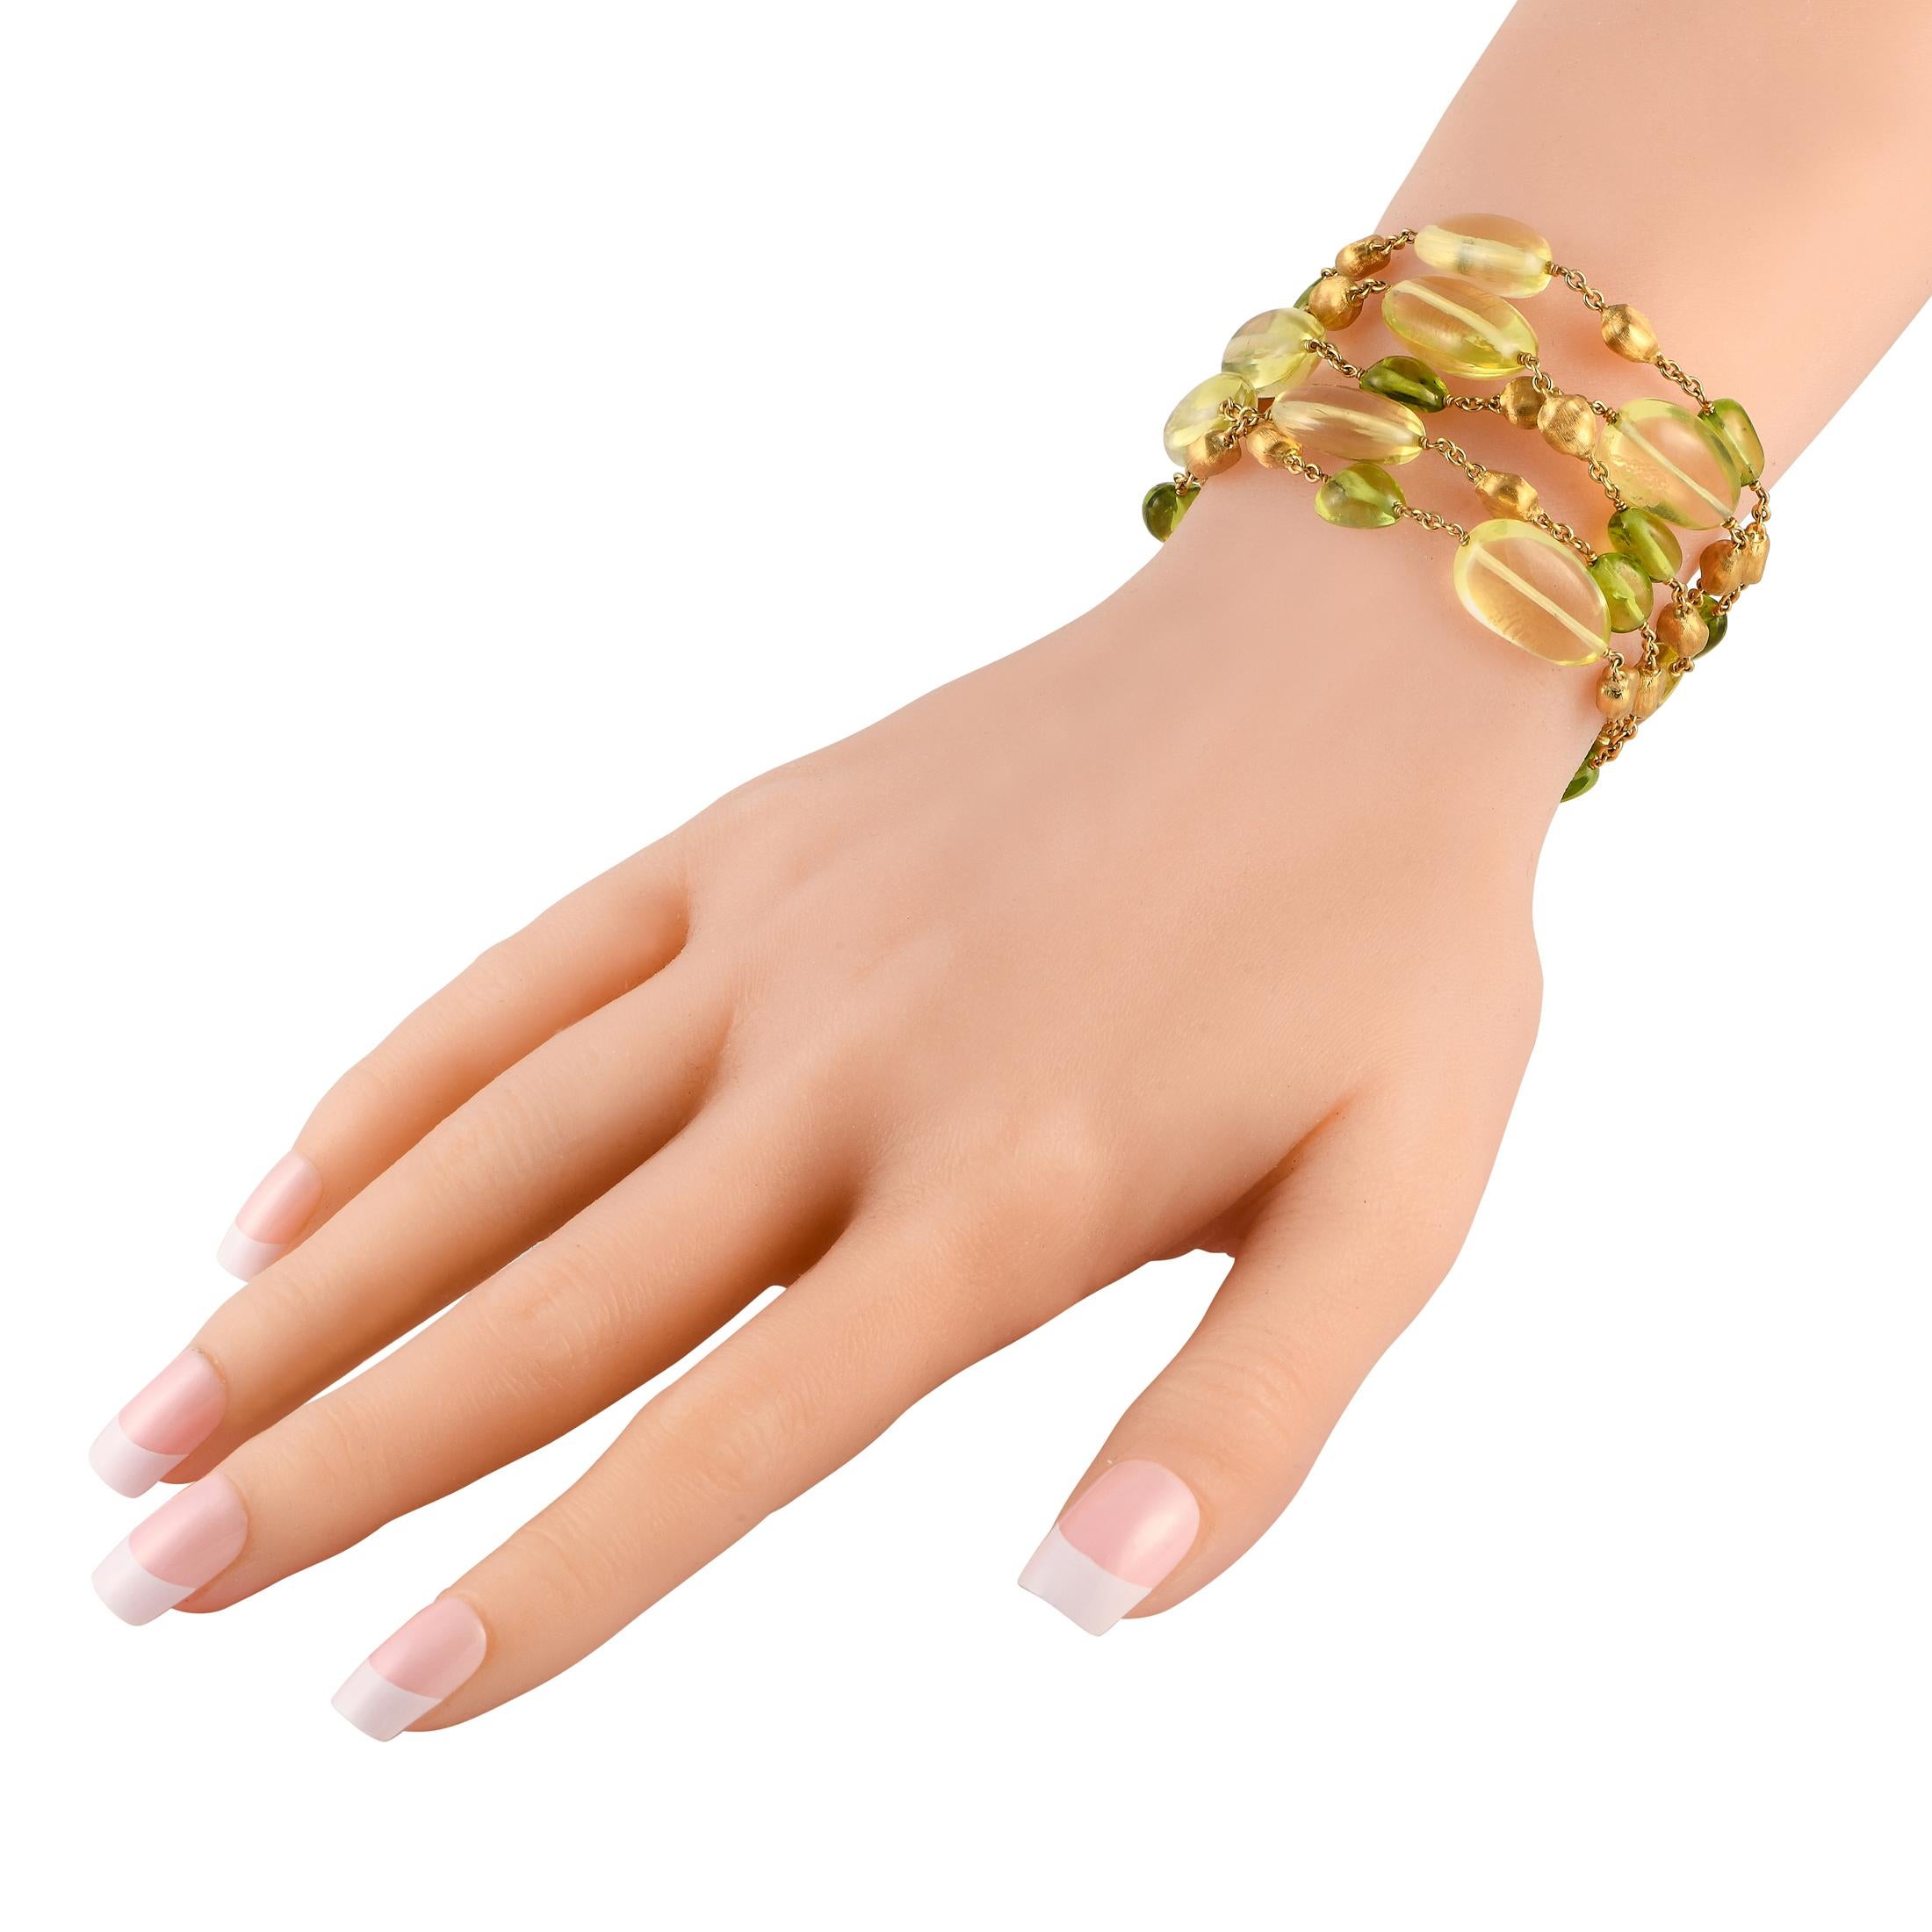 De multiples brins font de ce bracelet Marco Bicego un accessoire captivant qui ne cessera de vous couper le souffle. Fabriqué en or jaune 18 carats et rehaussé de pierres précieuses péridot, ce bijou coloré mesure 7,10 cm de long.